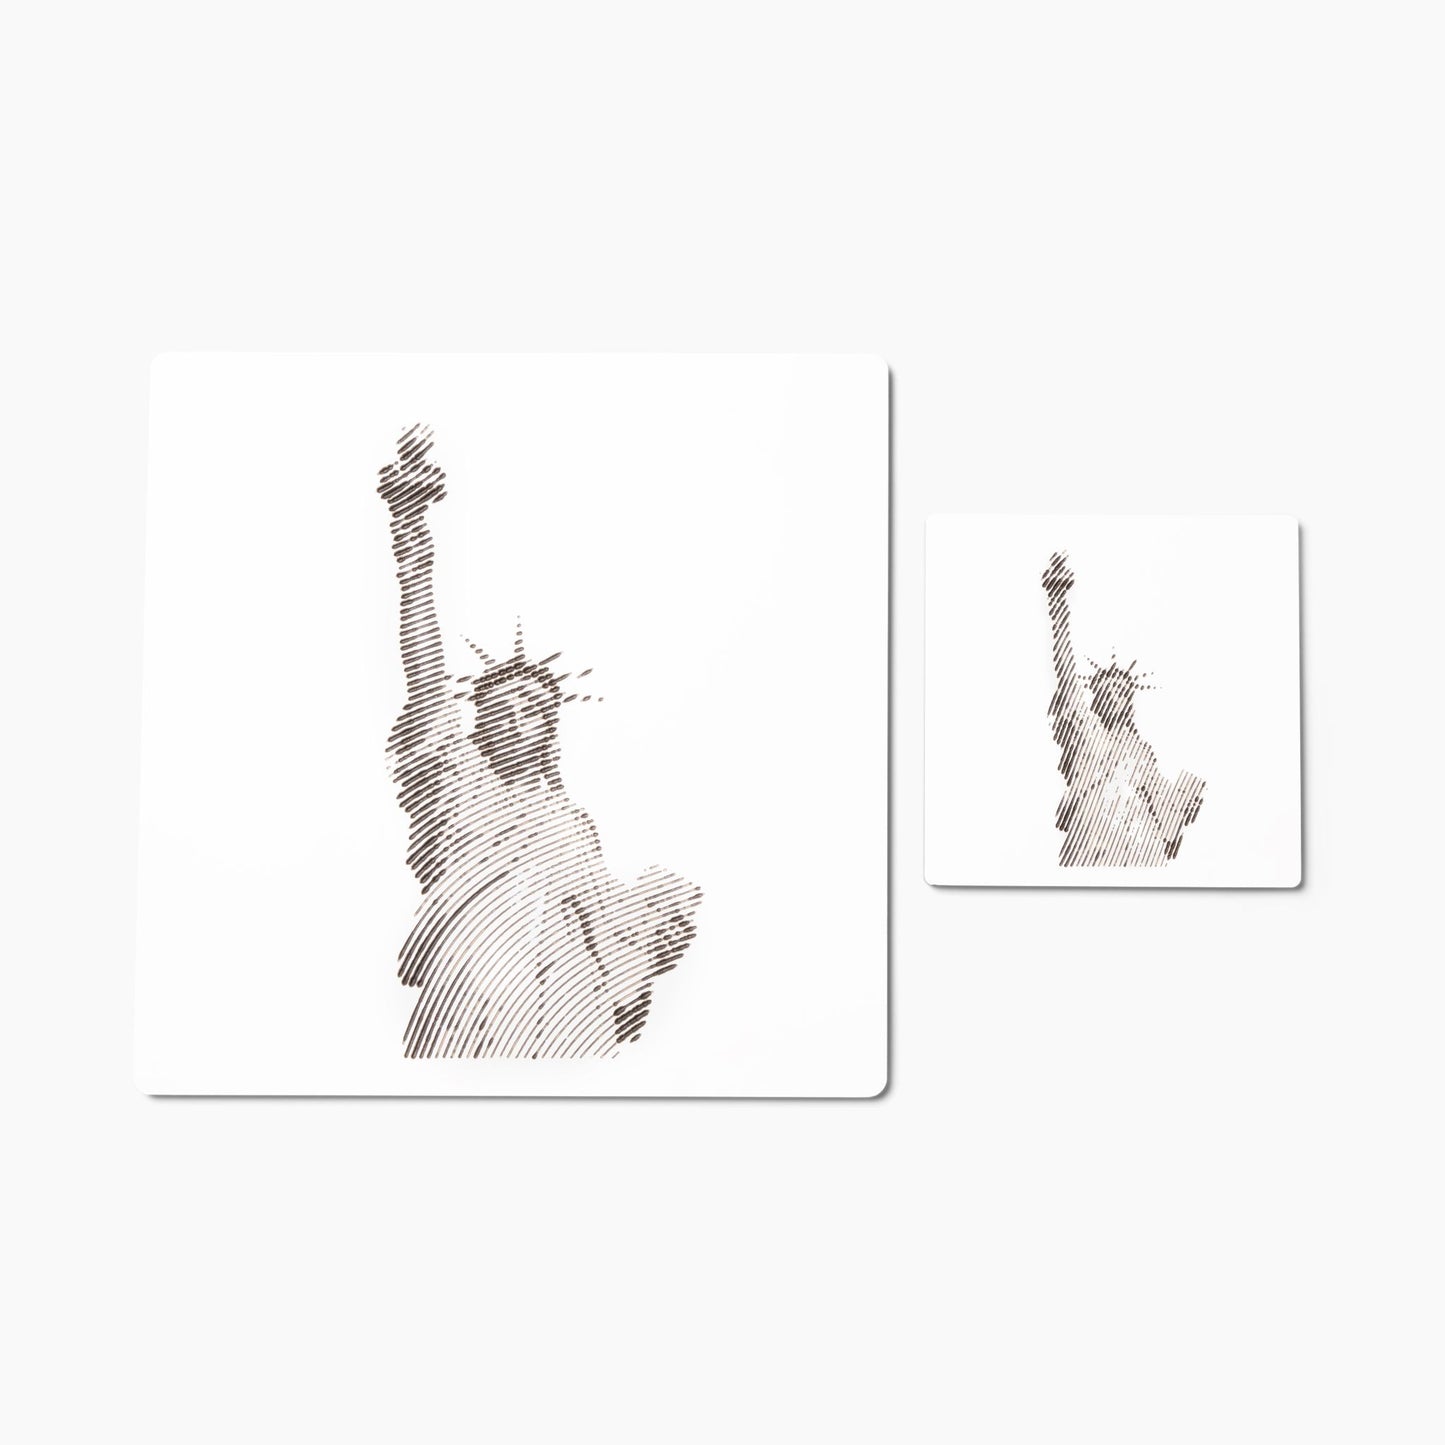 Statue of Liberty Wall Art